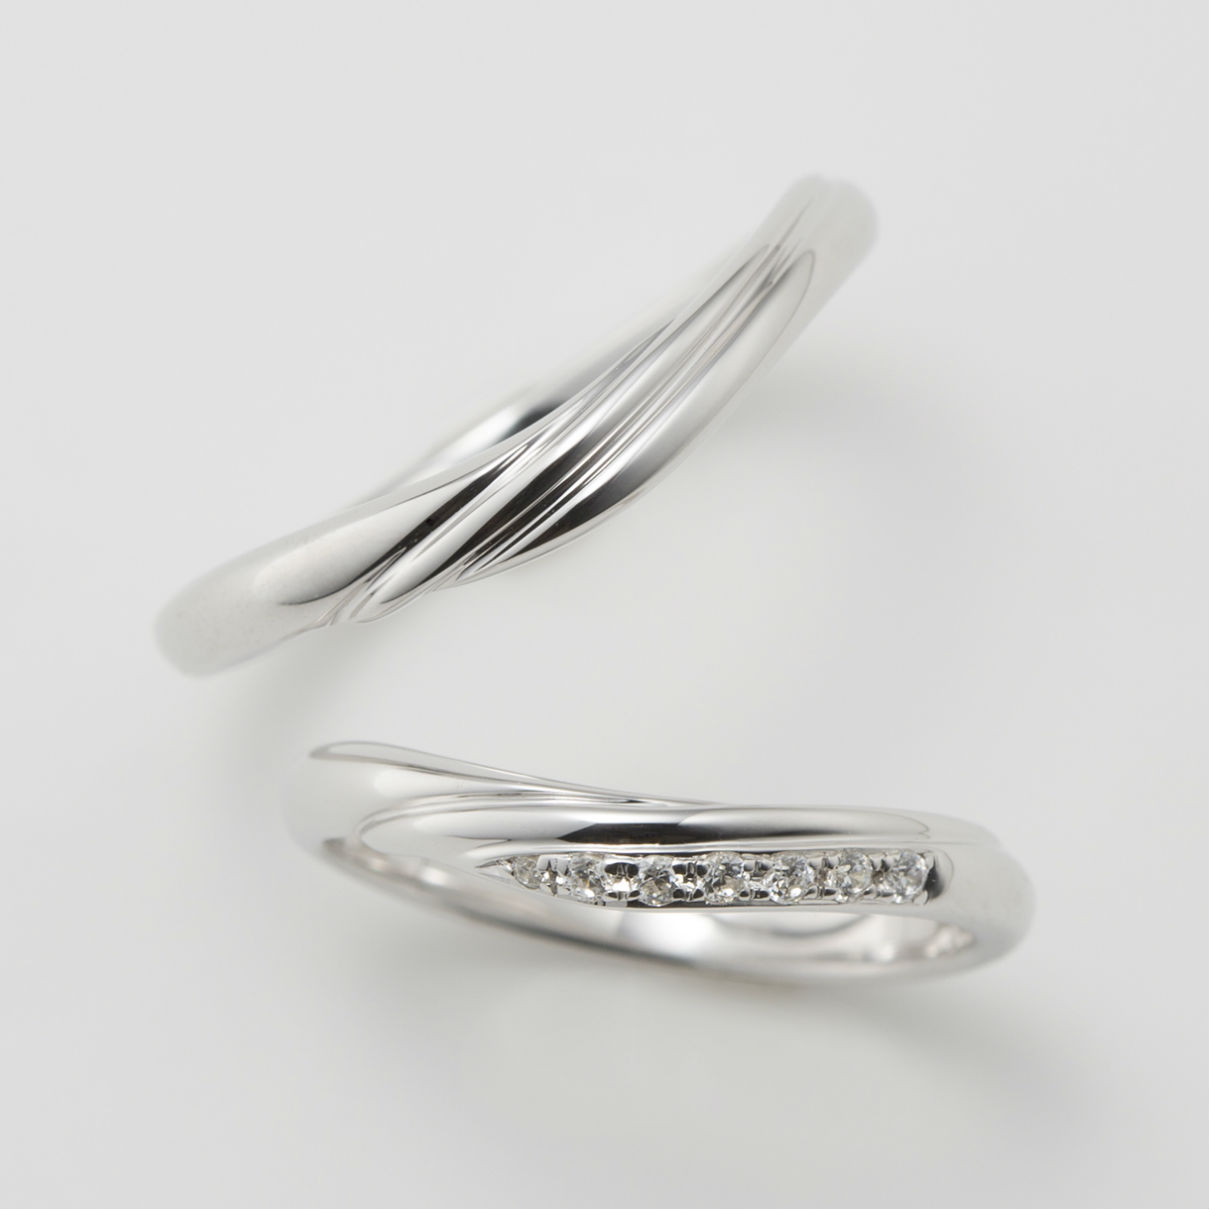 ダイヤをあしらった人気のウェーブデザインの結婚指輪